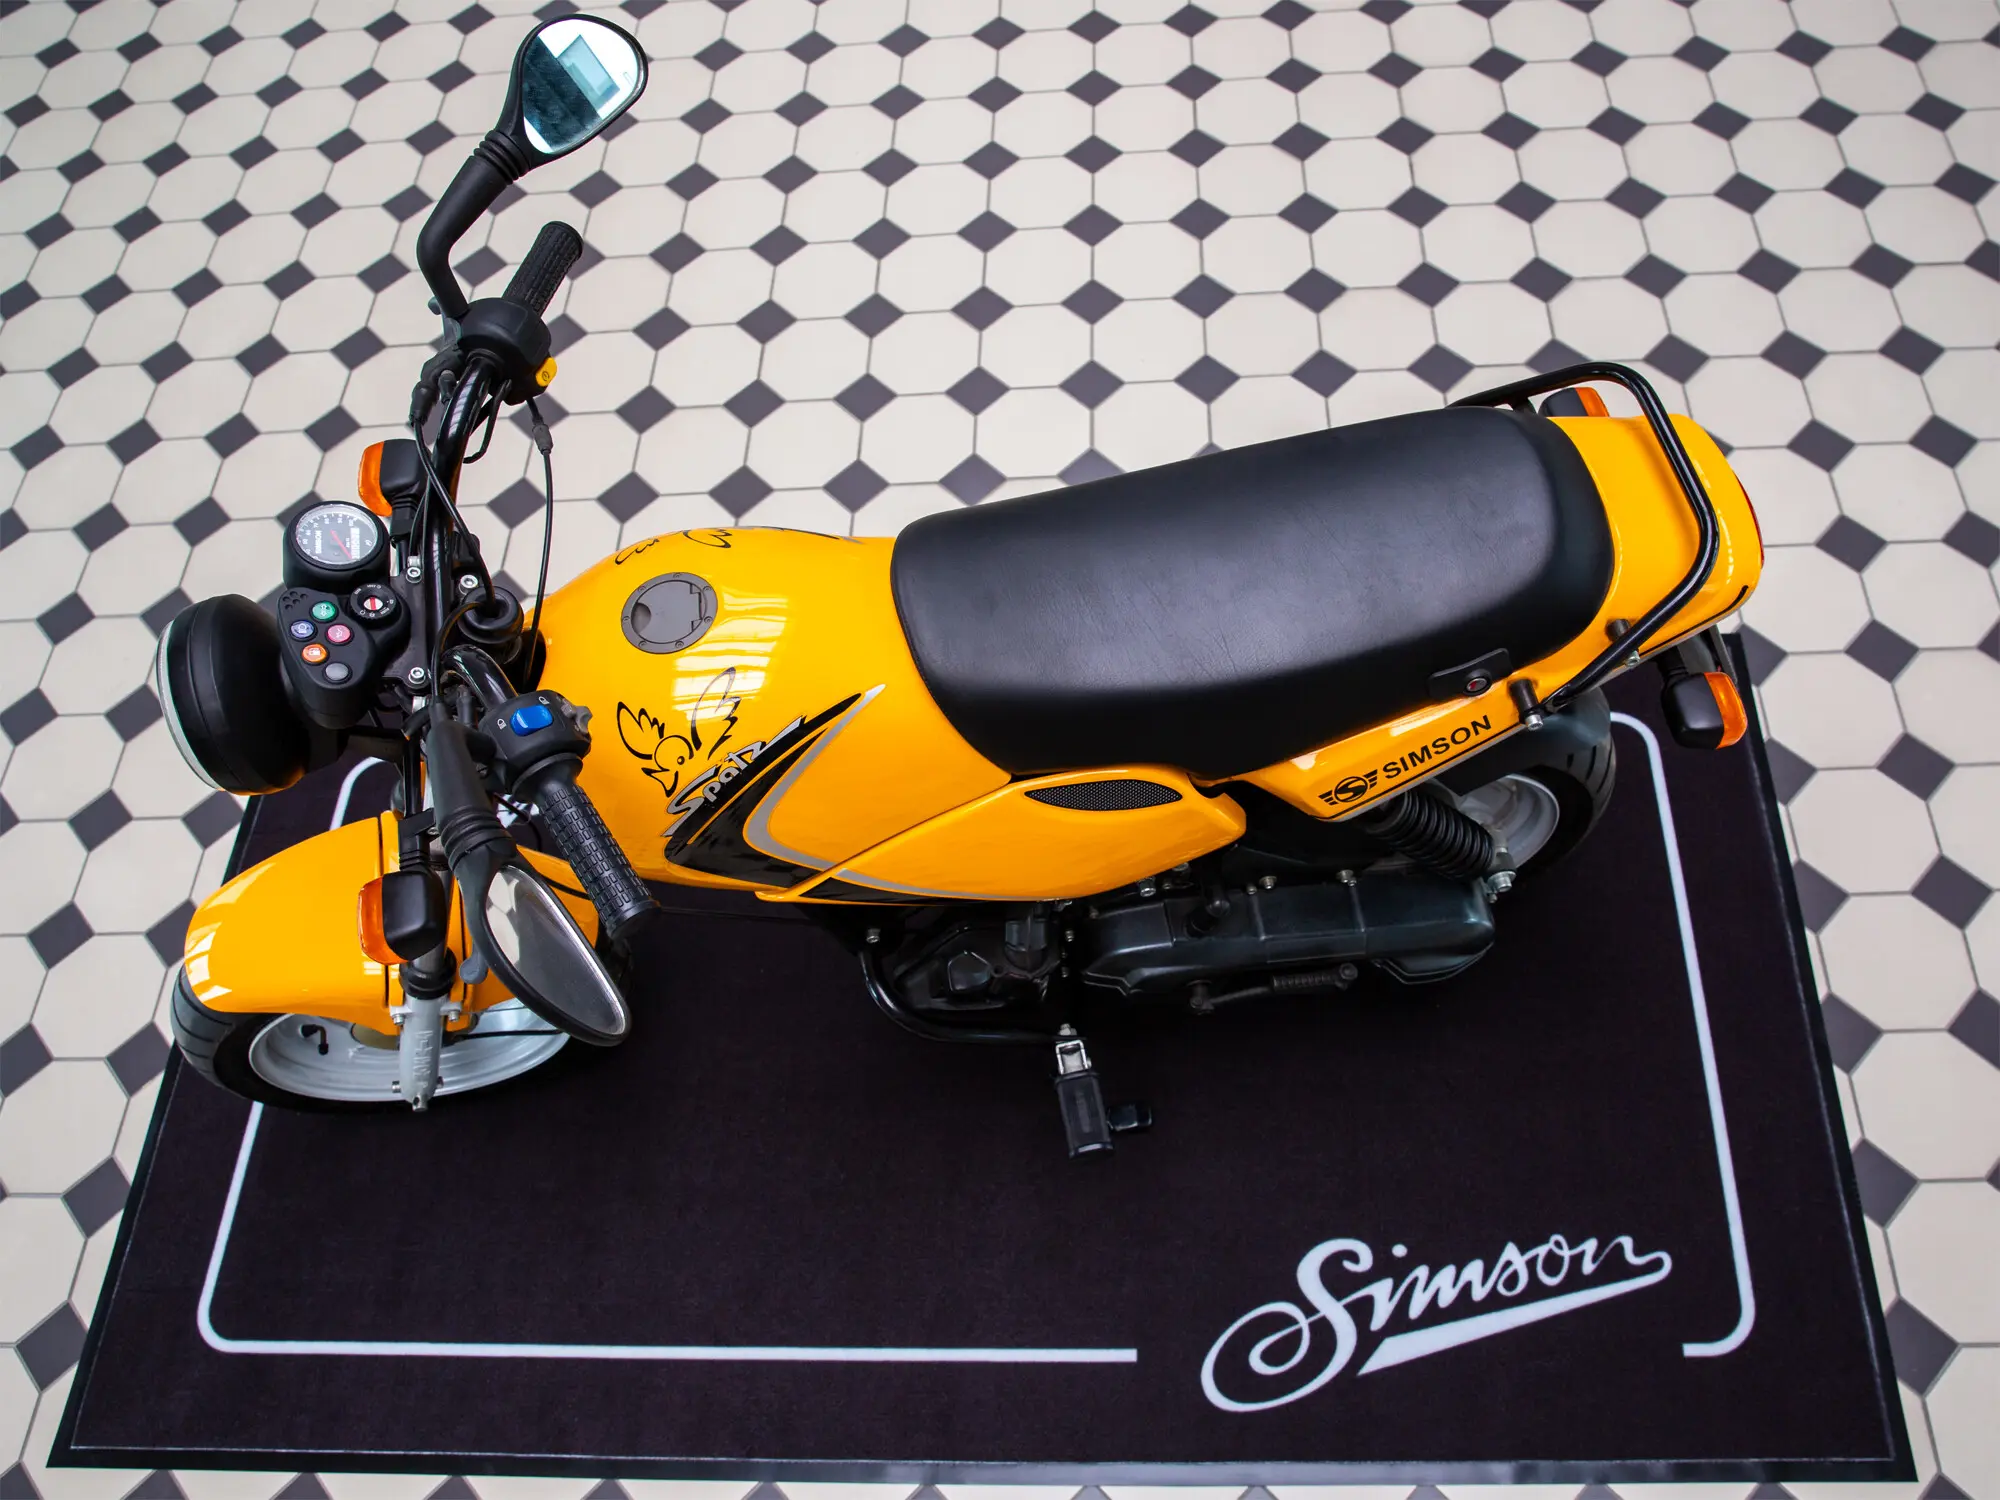 Simson Ersatzteile Shop  Motorrad Mögling - Werkstattmatte, massive  Qualität, undurchlässig für Flüssigkeiten Größe: ca. 200x 103cm